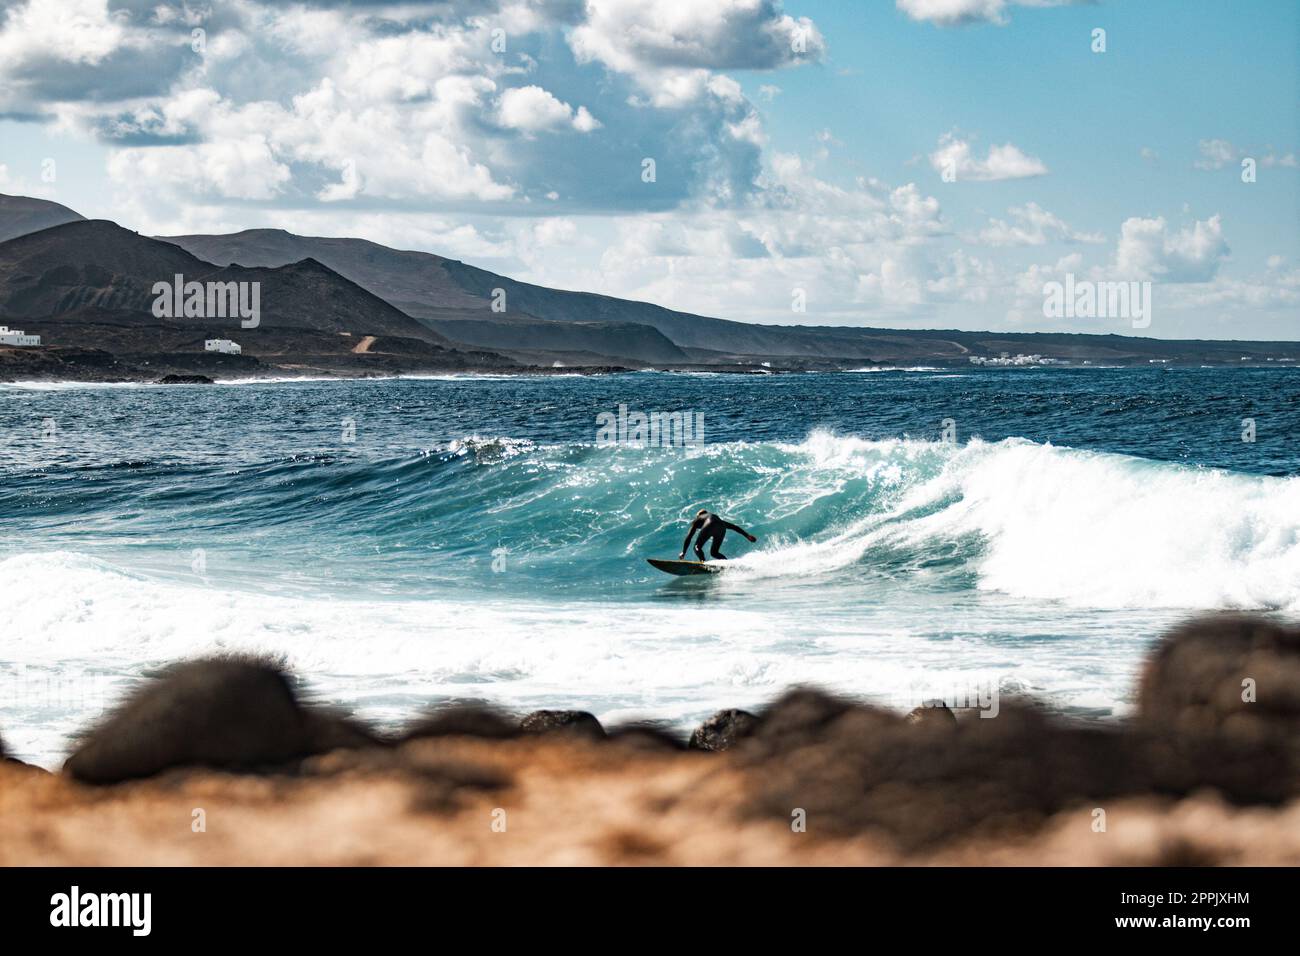 Wilde felsige Küste des Surfspots La Santa Lanzarote, Kanarische Inseln, Spanien. Surfer reiten eine große Welle in felsiger Bucht, Vulkan Berg im Hintergrund. Stockfoto